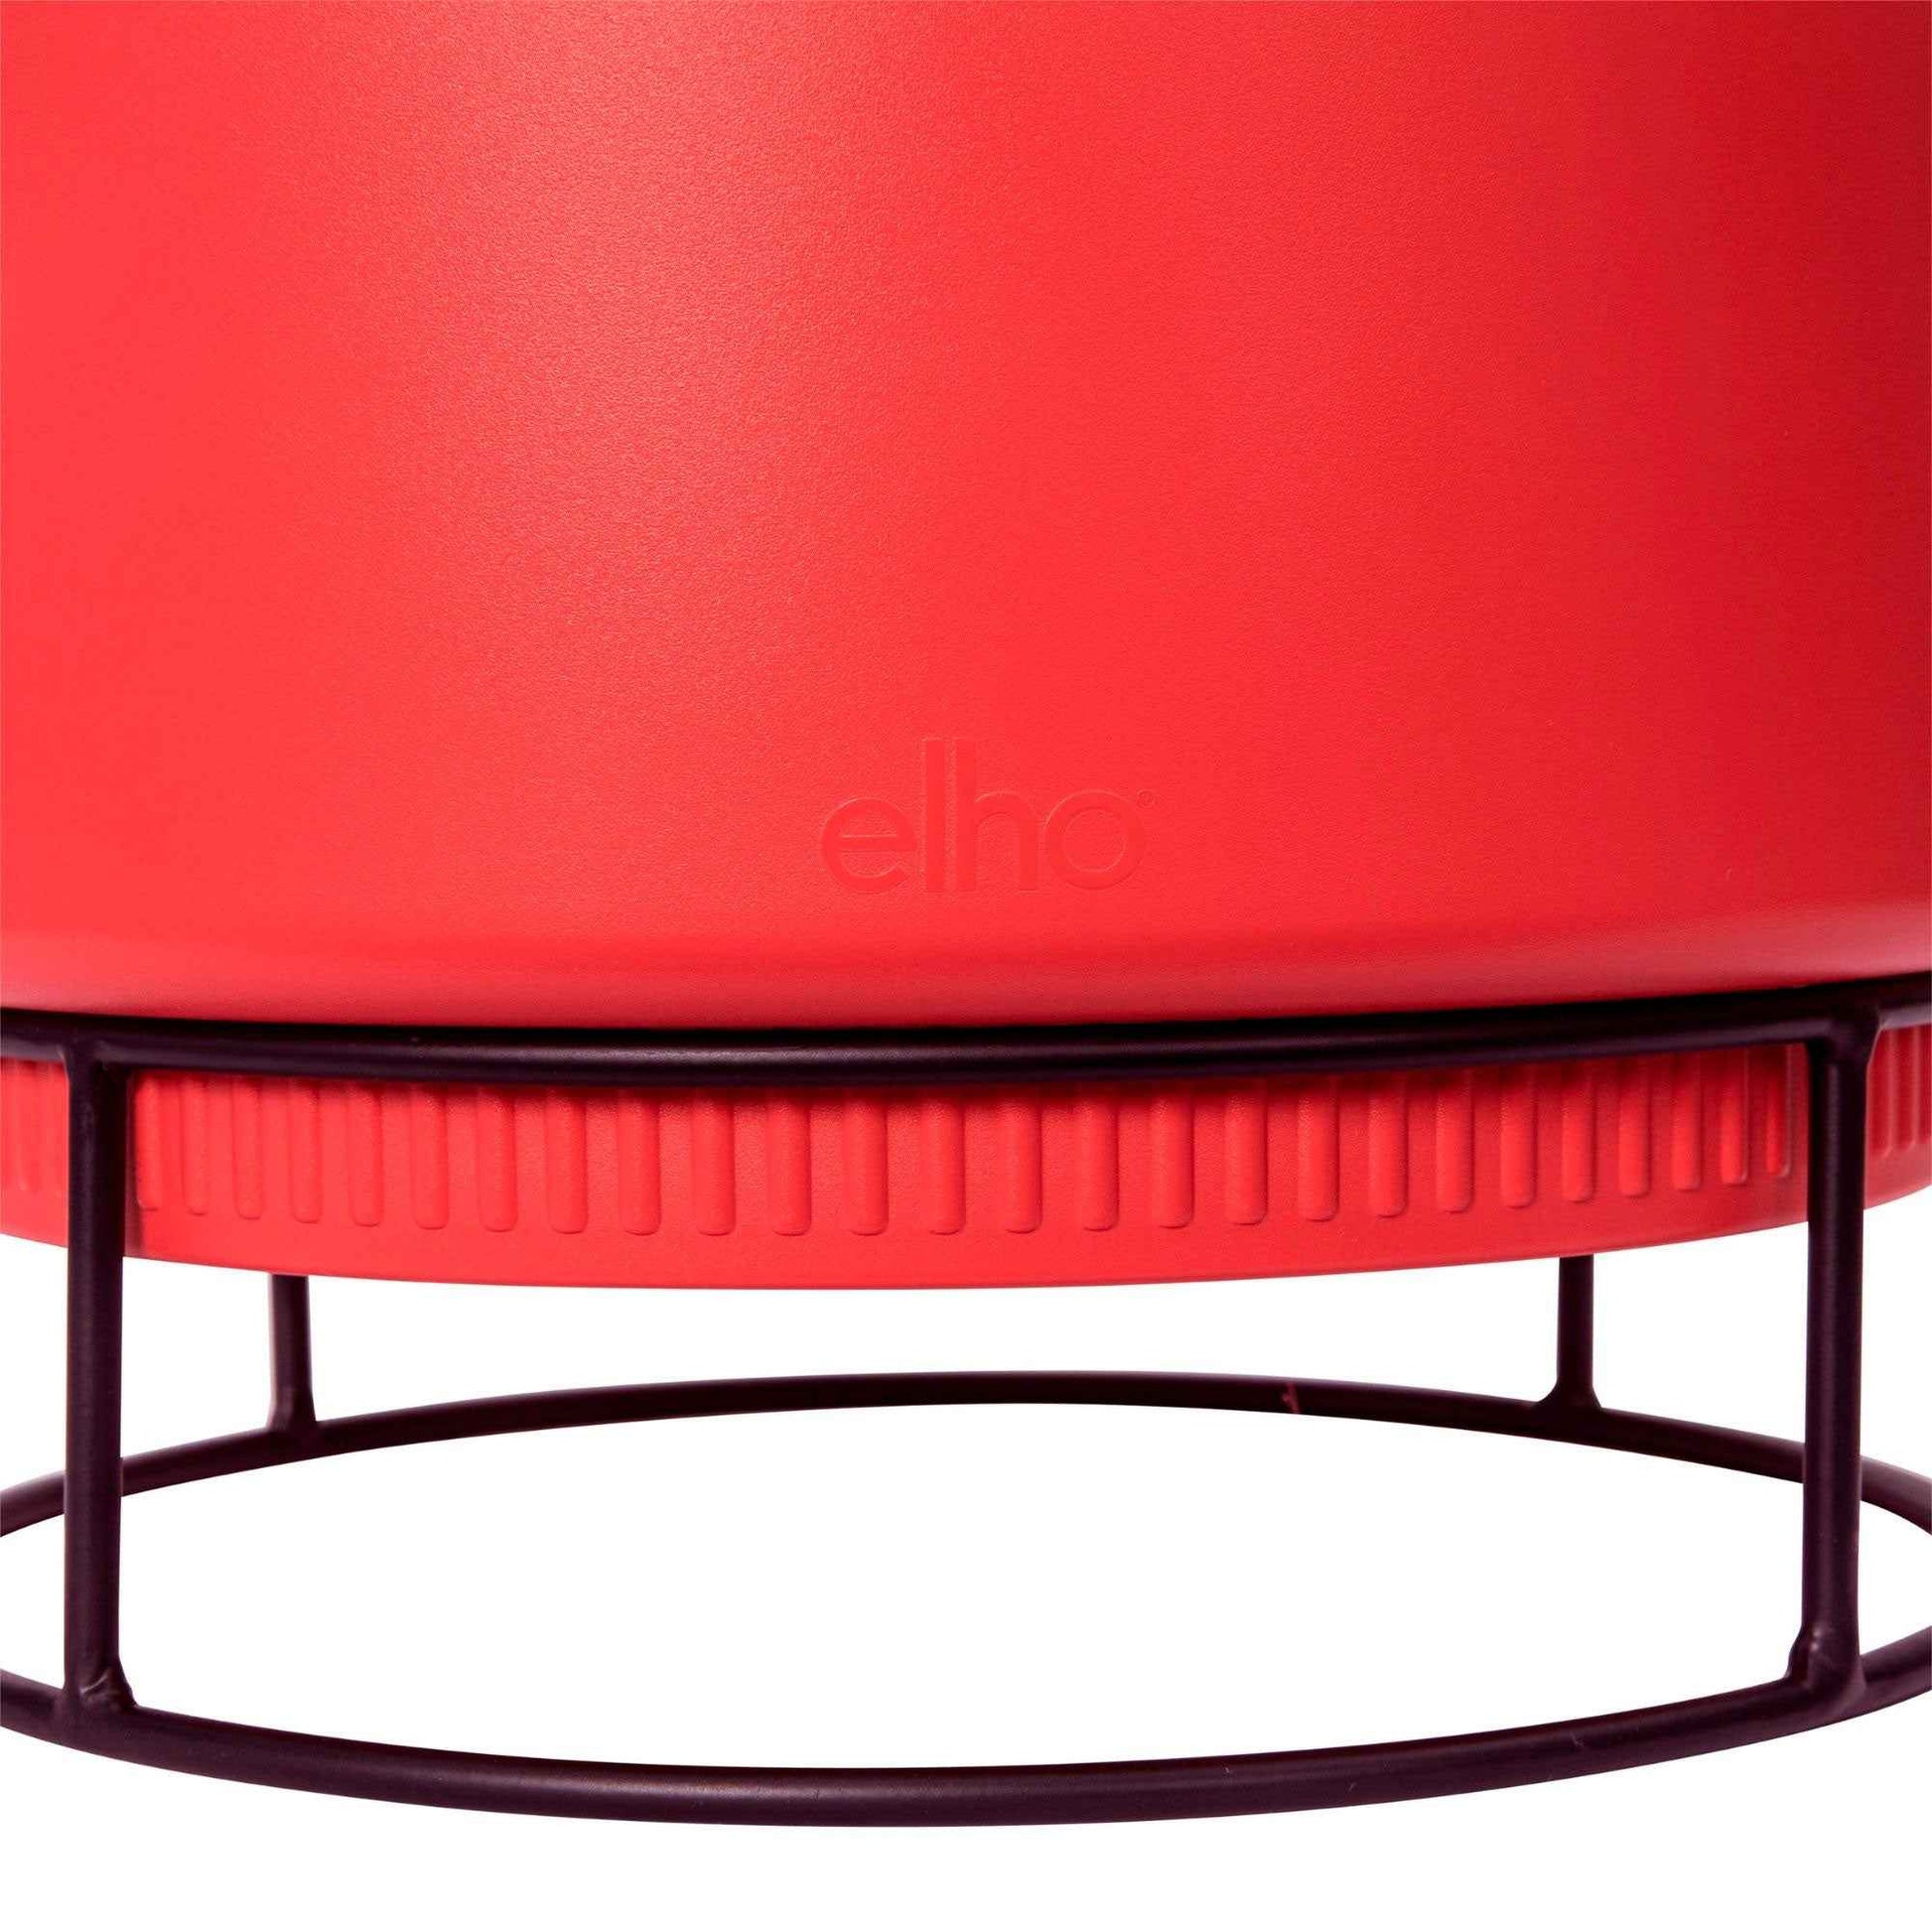 Elho B. for Studio Bowl -  Pot pour l'intérieur avec table à plantes Rouge - Marques